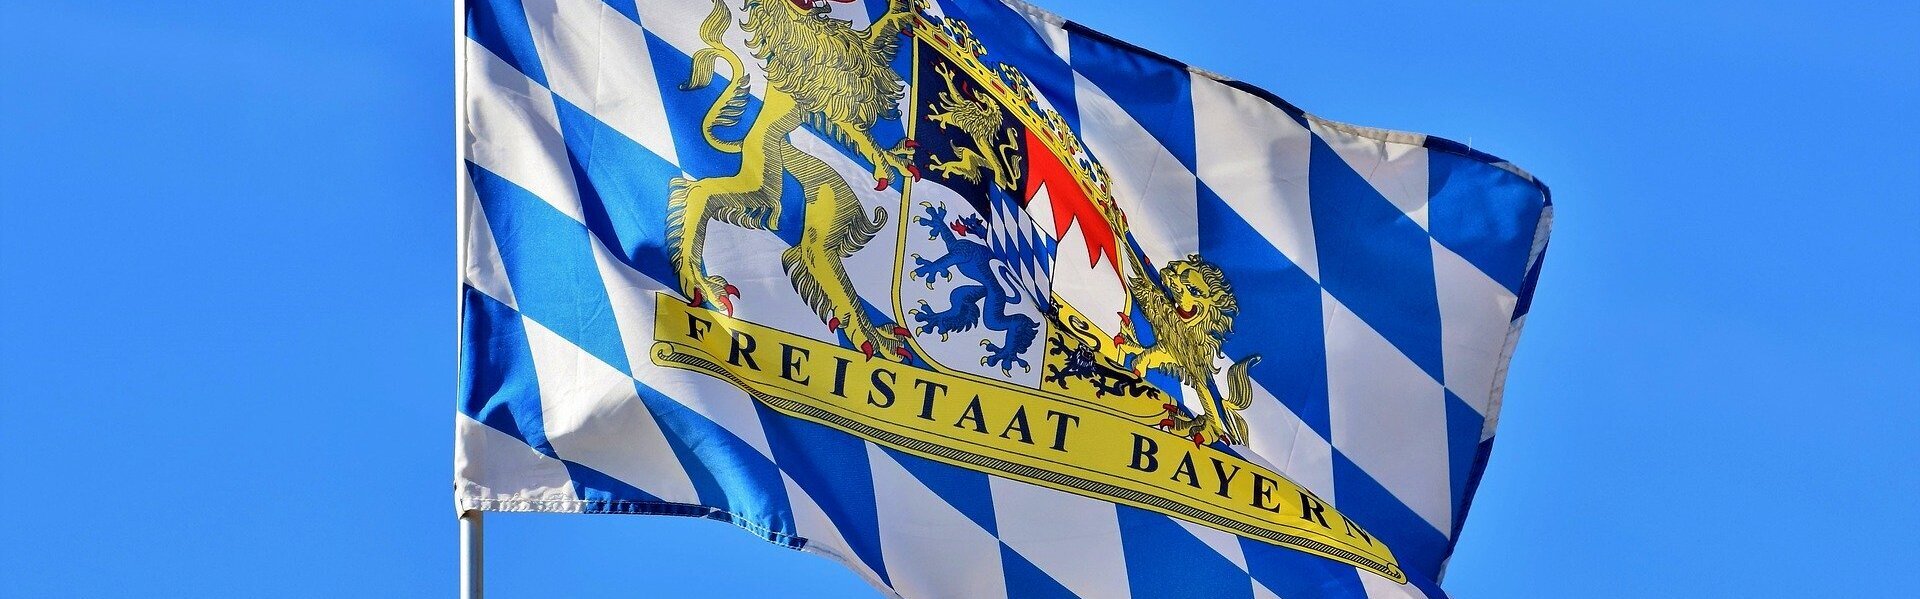 DAs Bild zeigt Bayerns Flagge